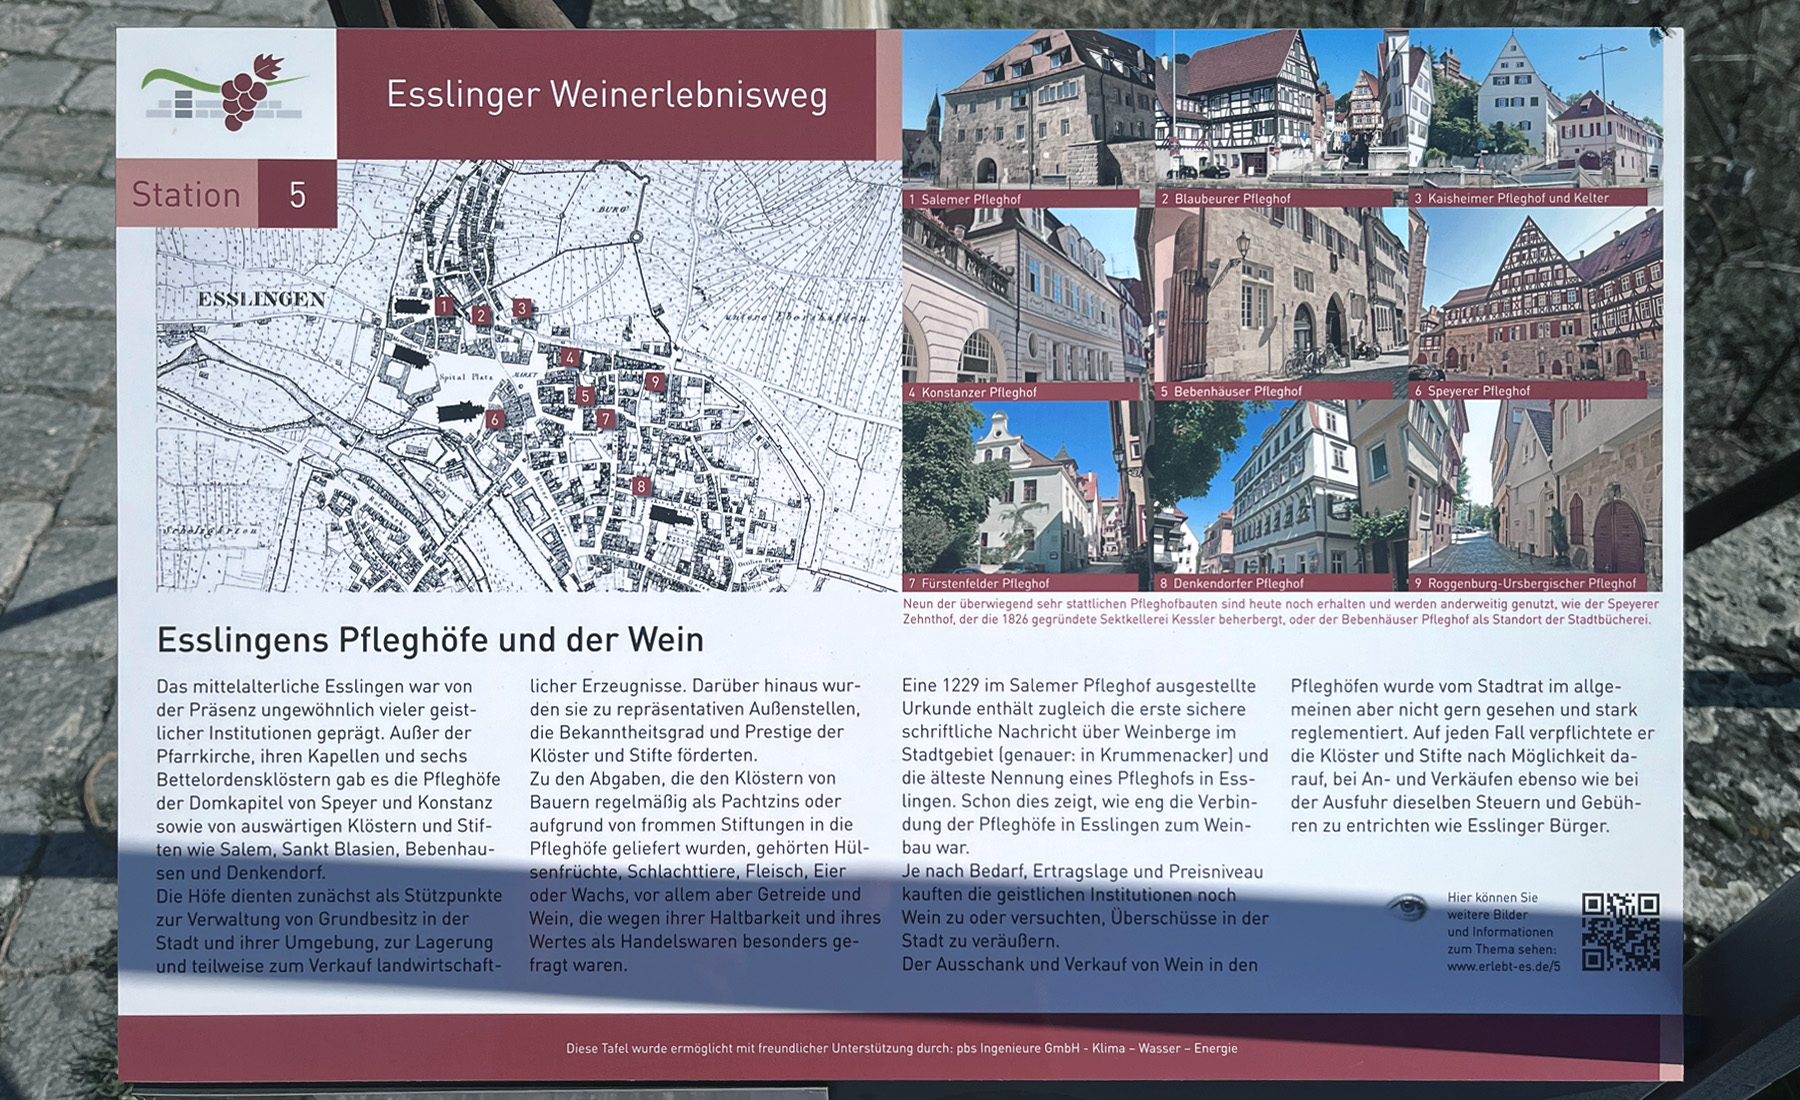 德國 Stuttgart（斯圖加特）鄰近古鎮 Esslingen am Neckar（埃斯林根），葡萄園景觀步道，酒廠地圖